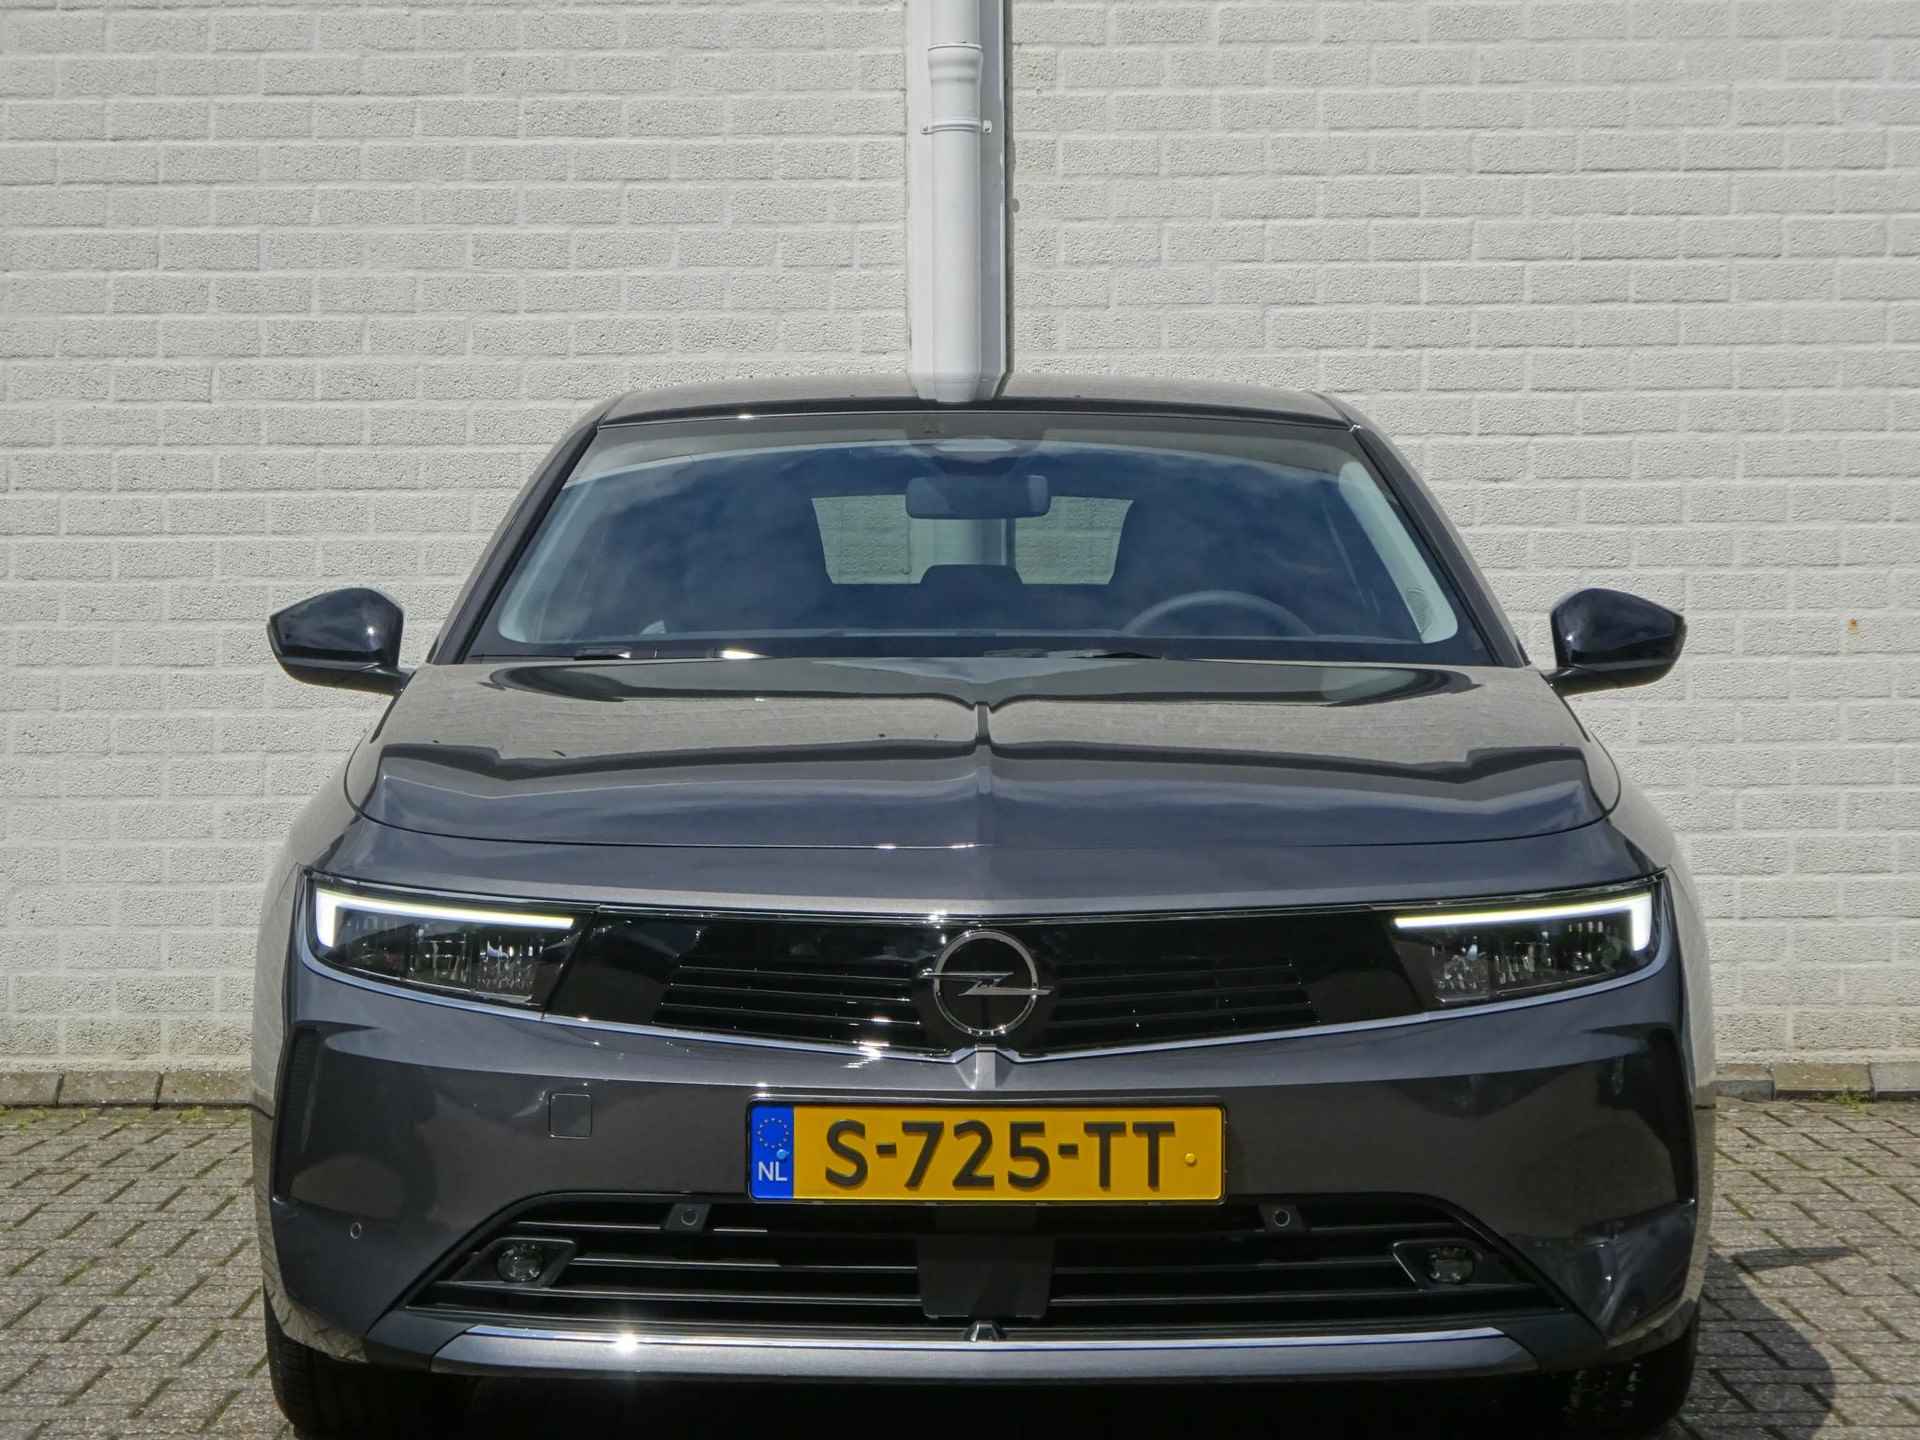 Opel Astra 1.2 Turbo 130pk 6 versnellingen Business Edition | AGR STOELEN | RESERVEWIEL VOORBEREIDING | TREKHAAK | PER 25-11 BESCHIKBAAR | - 6/44